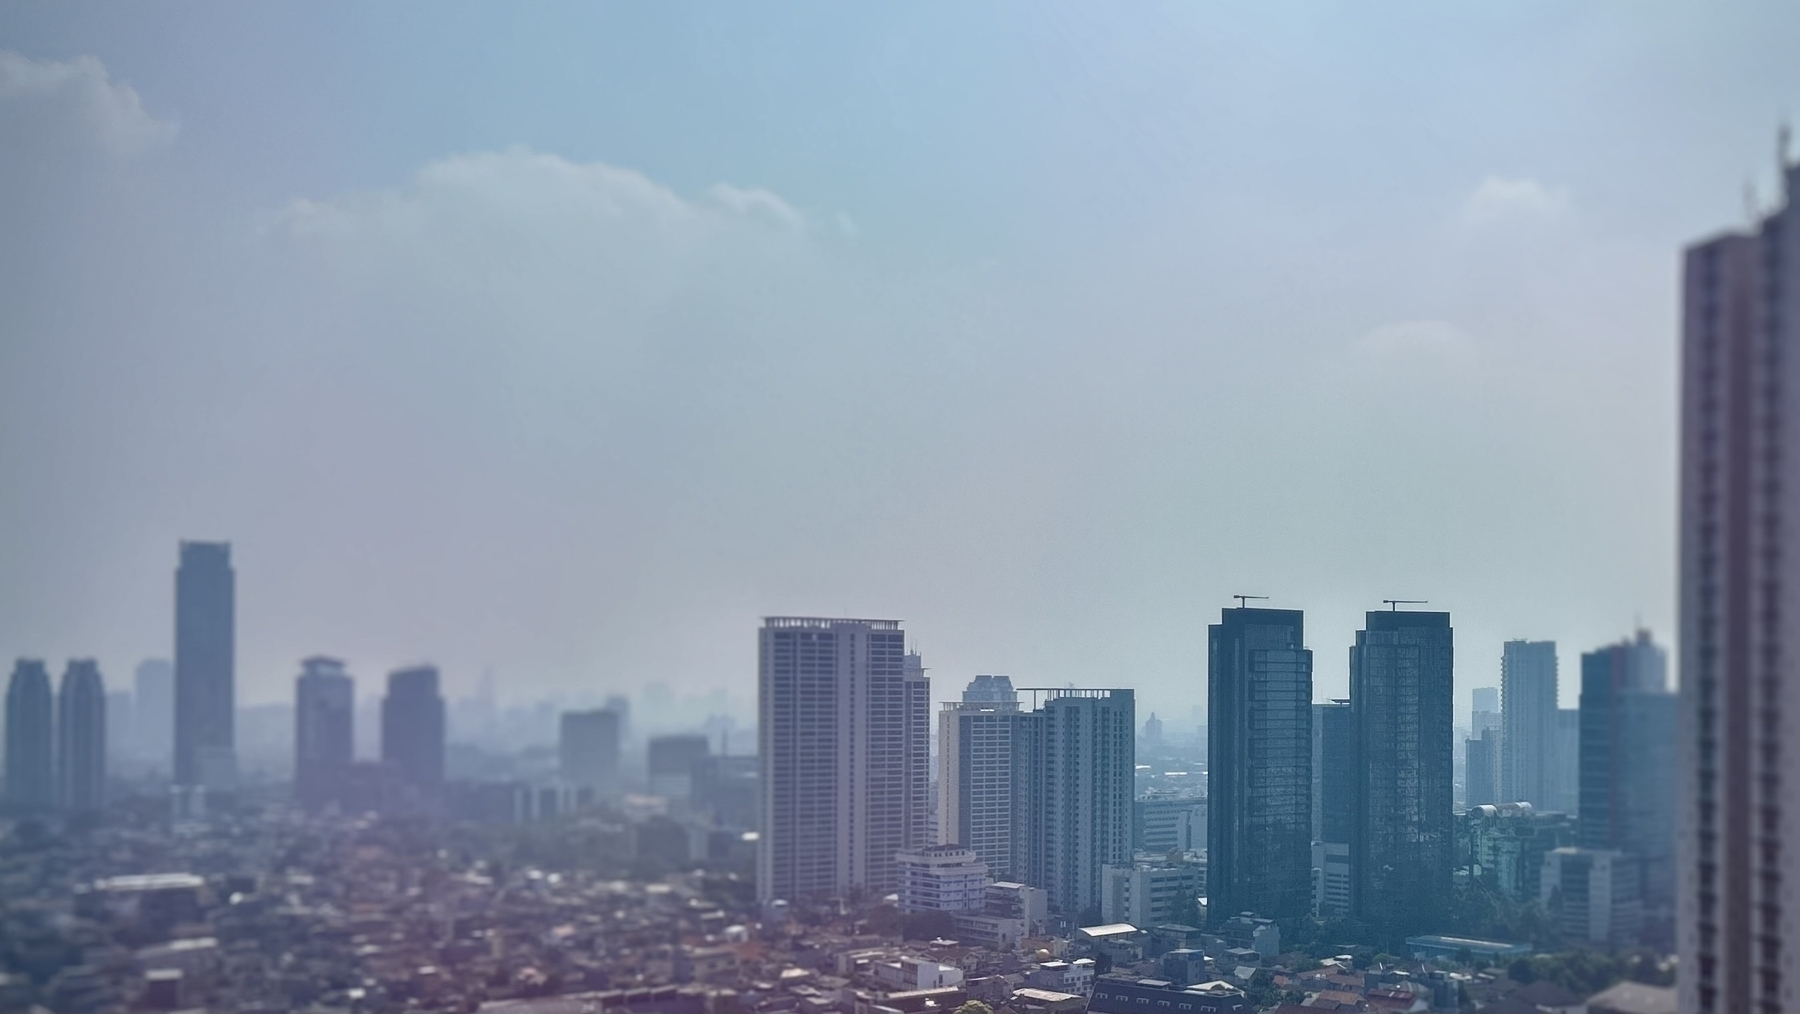 A hazy skyline with high rise buildings 